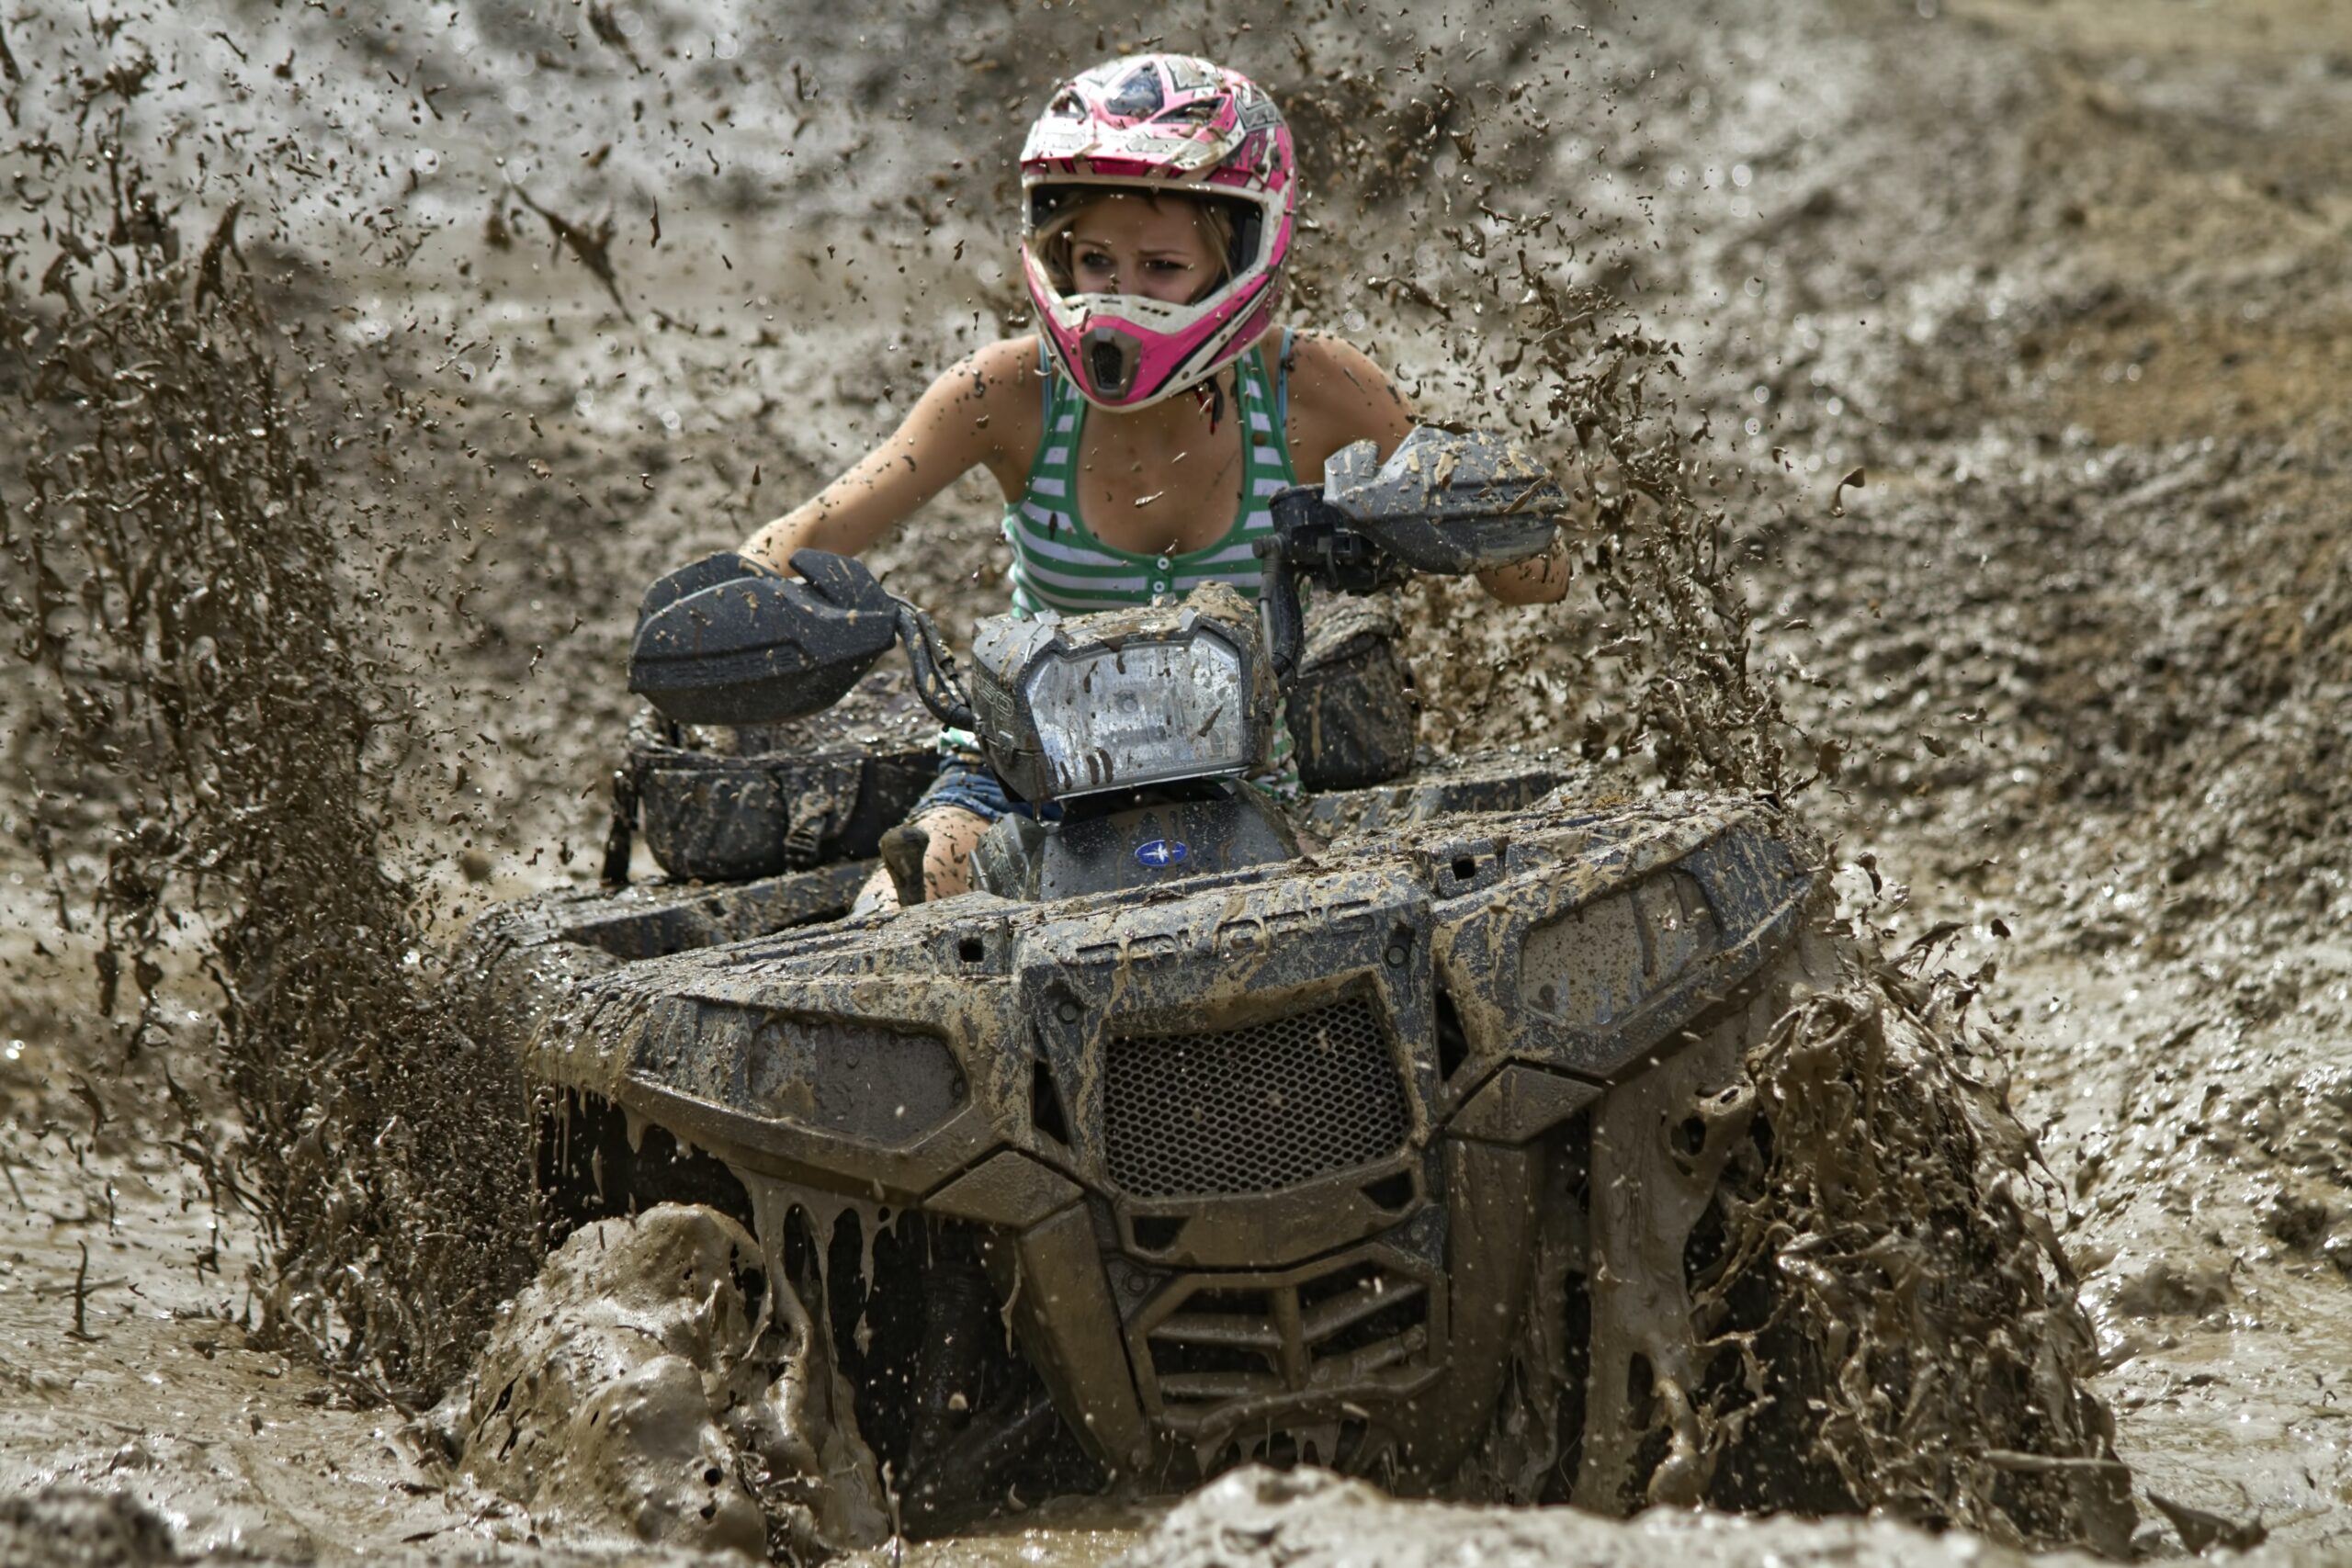 This is a woman riding a Polaris Ranger 500 through a deep mud hole.